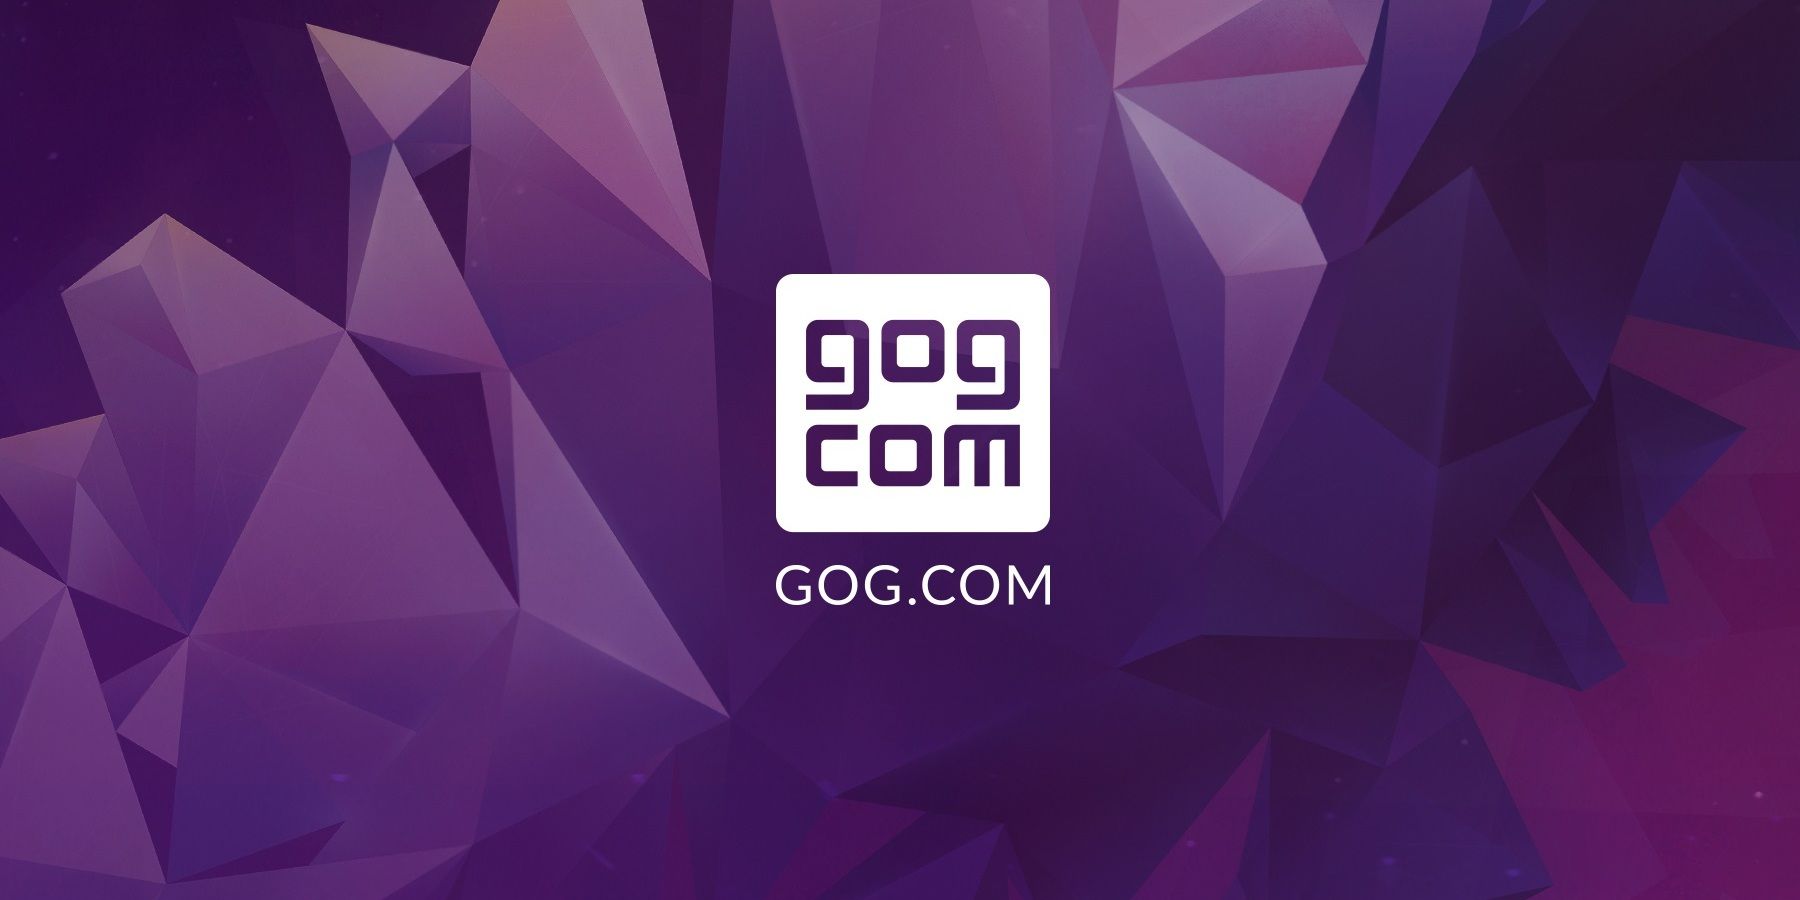 Good-Old-Games-GOG-Official-Fractal-Broken-Logo